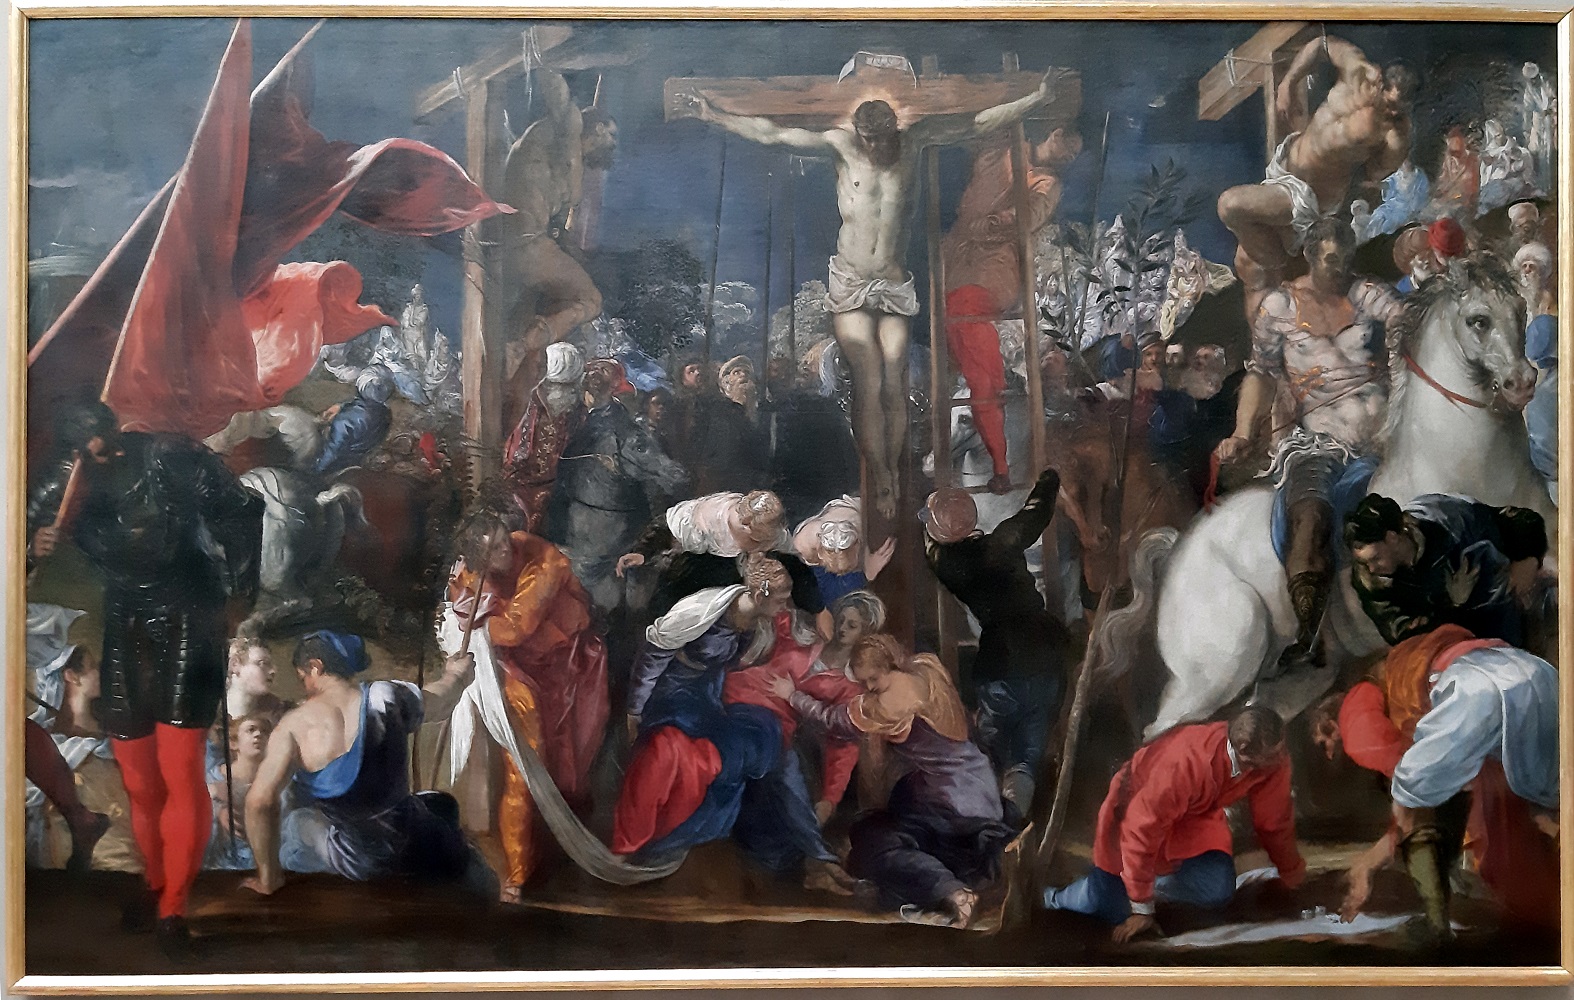 1554-55 tintoretto-crocifissione San Severo accademia venise